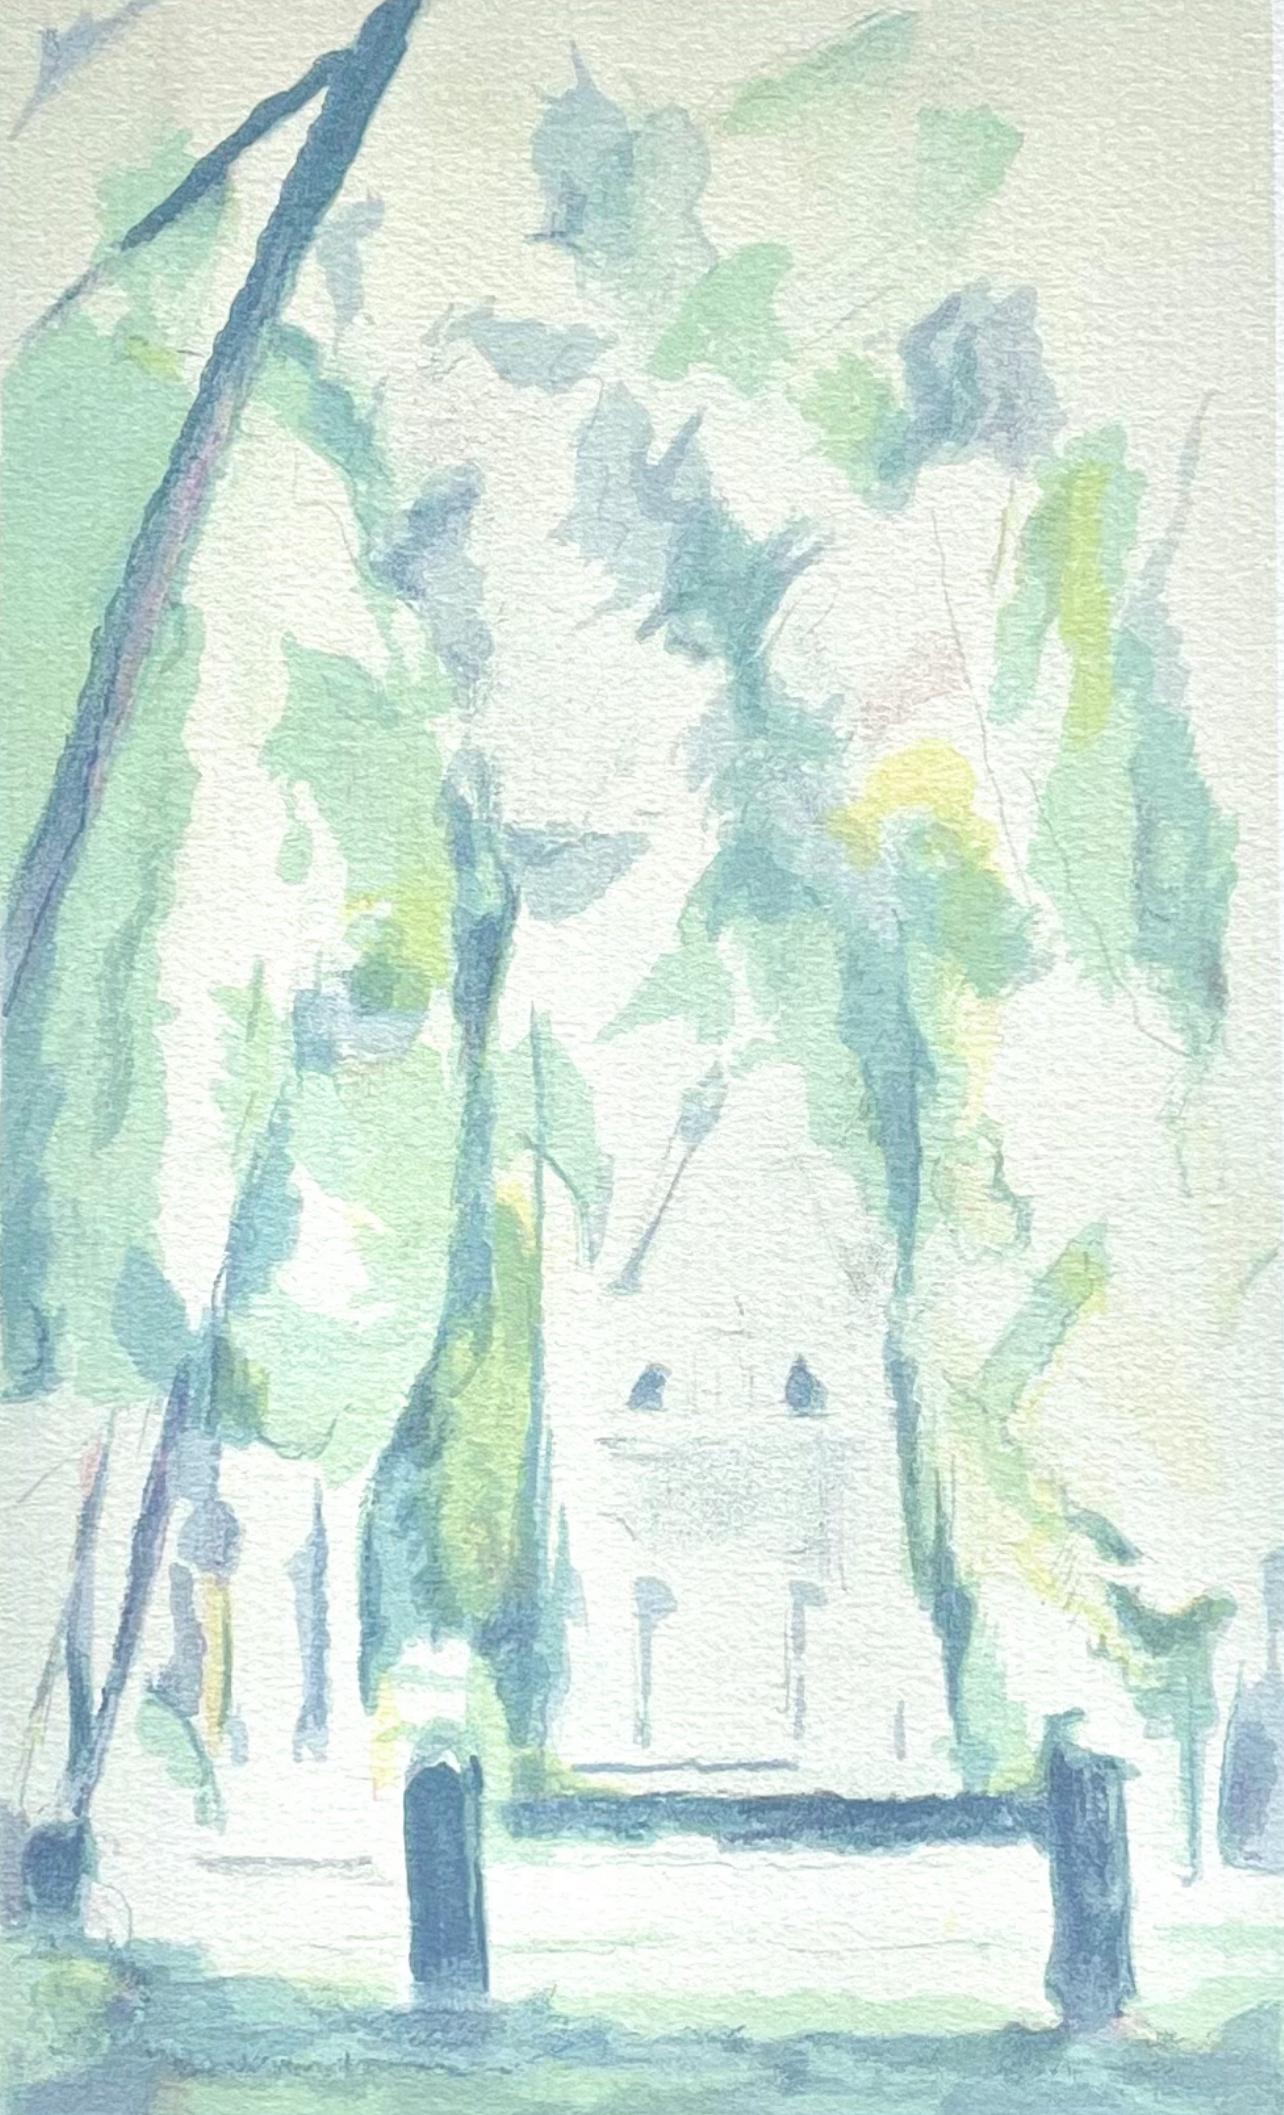 Paul Cézanne Landscape Print - Cézanne, The Gate, Chantilly, Cézanne: Ten Water Colors (after)